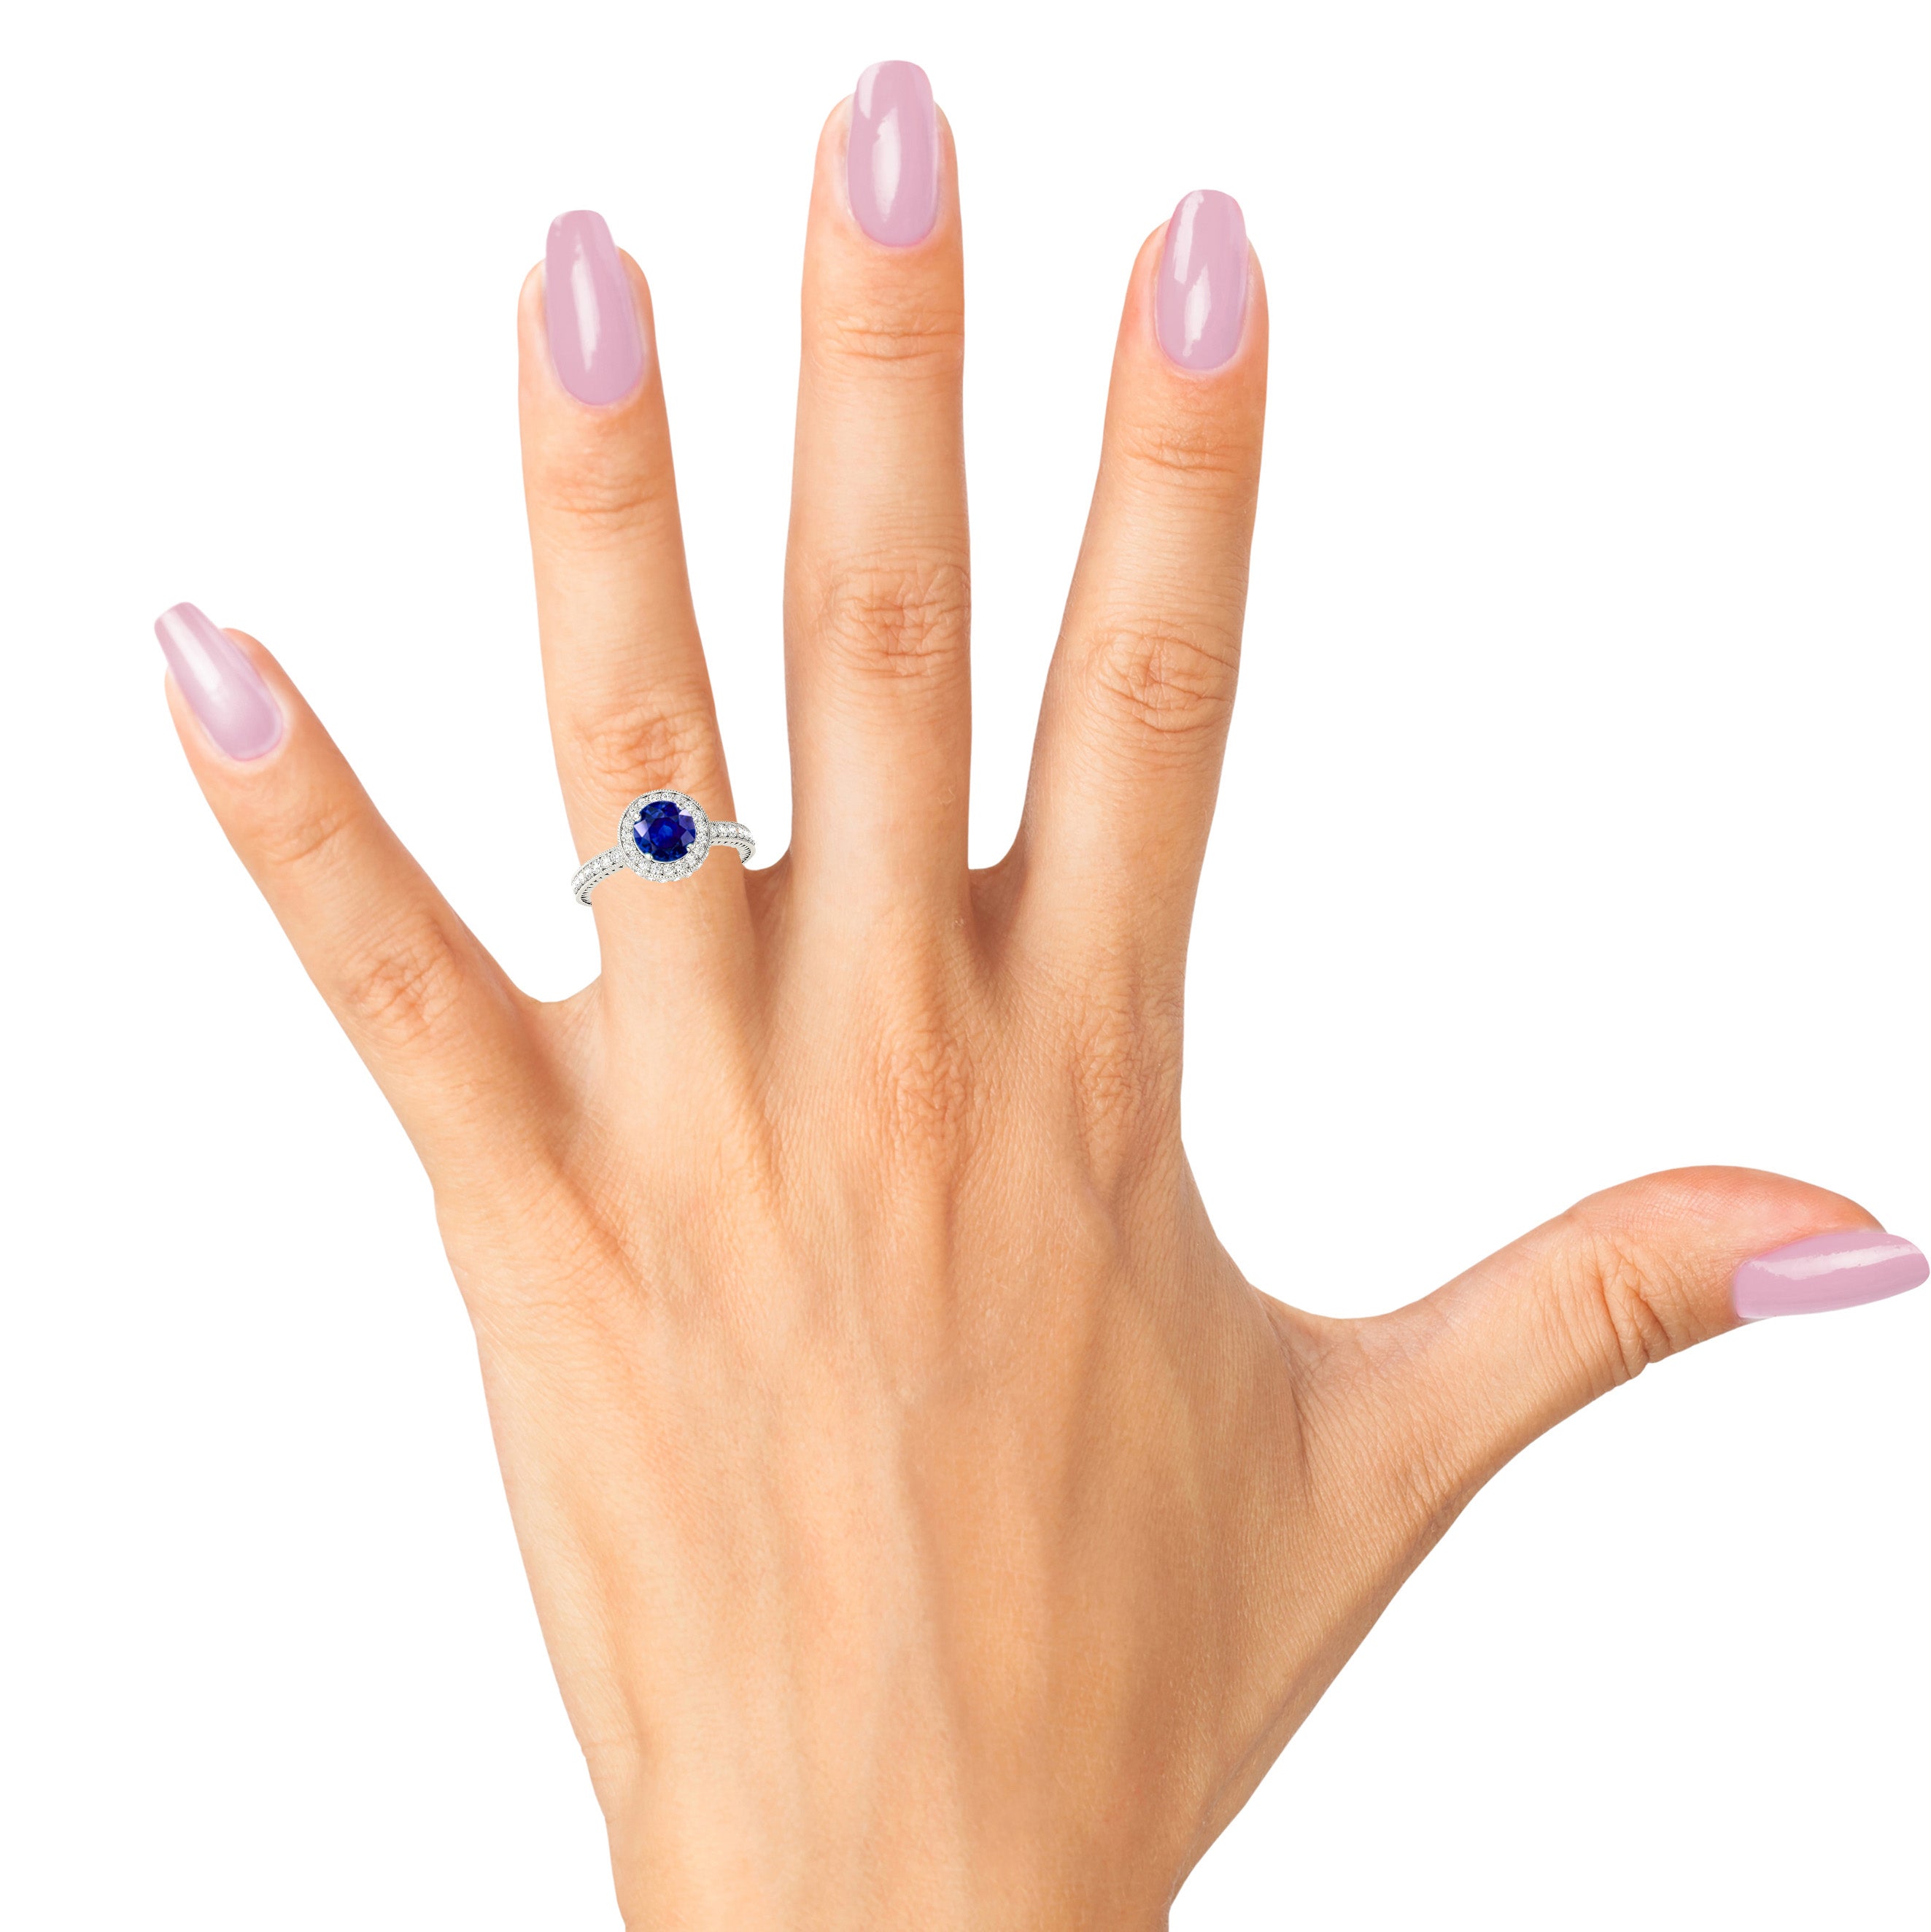 1.35 ct. Genuine Blue Sapphire and 0.50 ctw. Diamond Gemstone Ring-in 14K/18K White, Yellow, Rose Gold and Platinum - Christmas Jewelry Gift -VIRABYANI